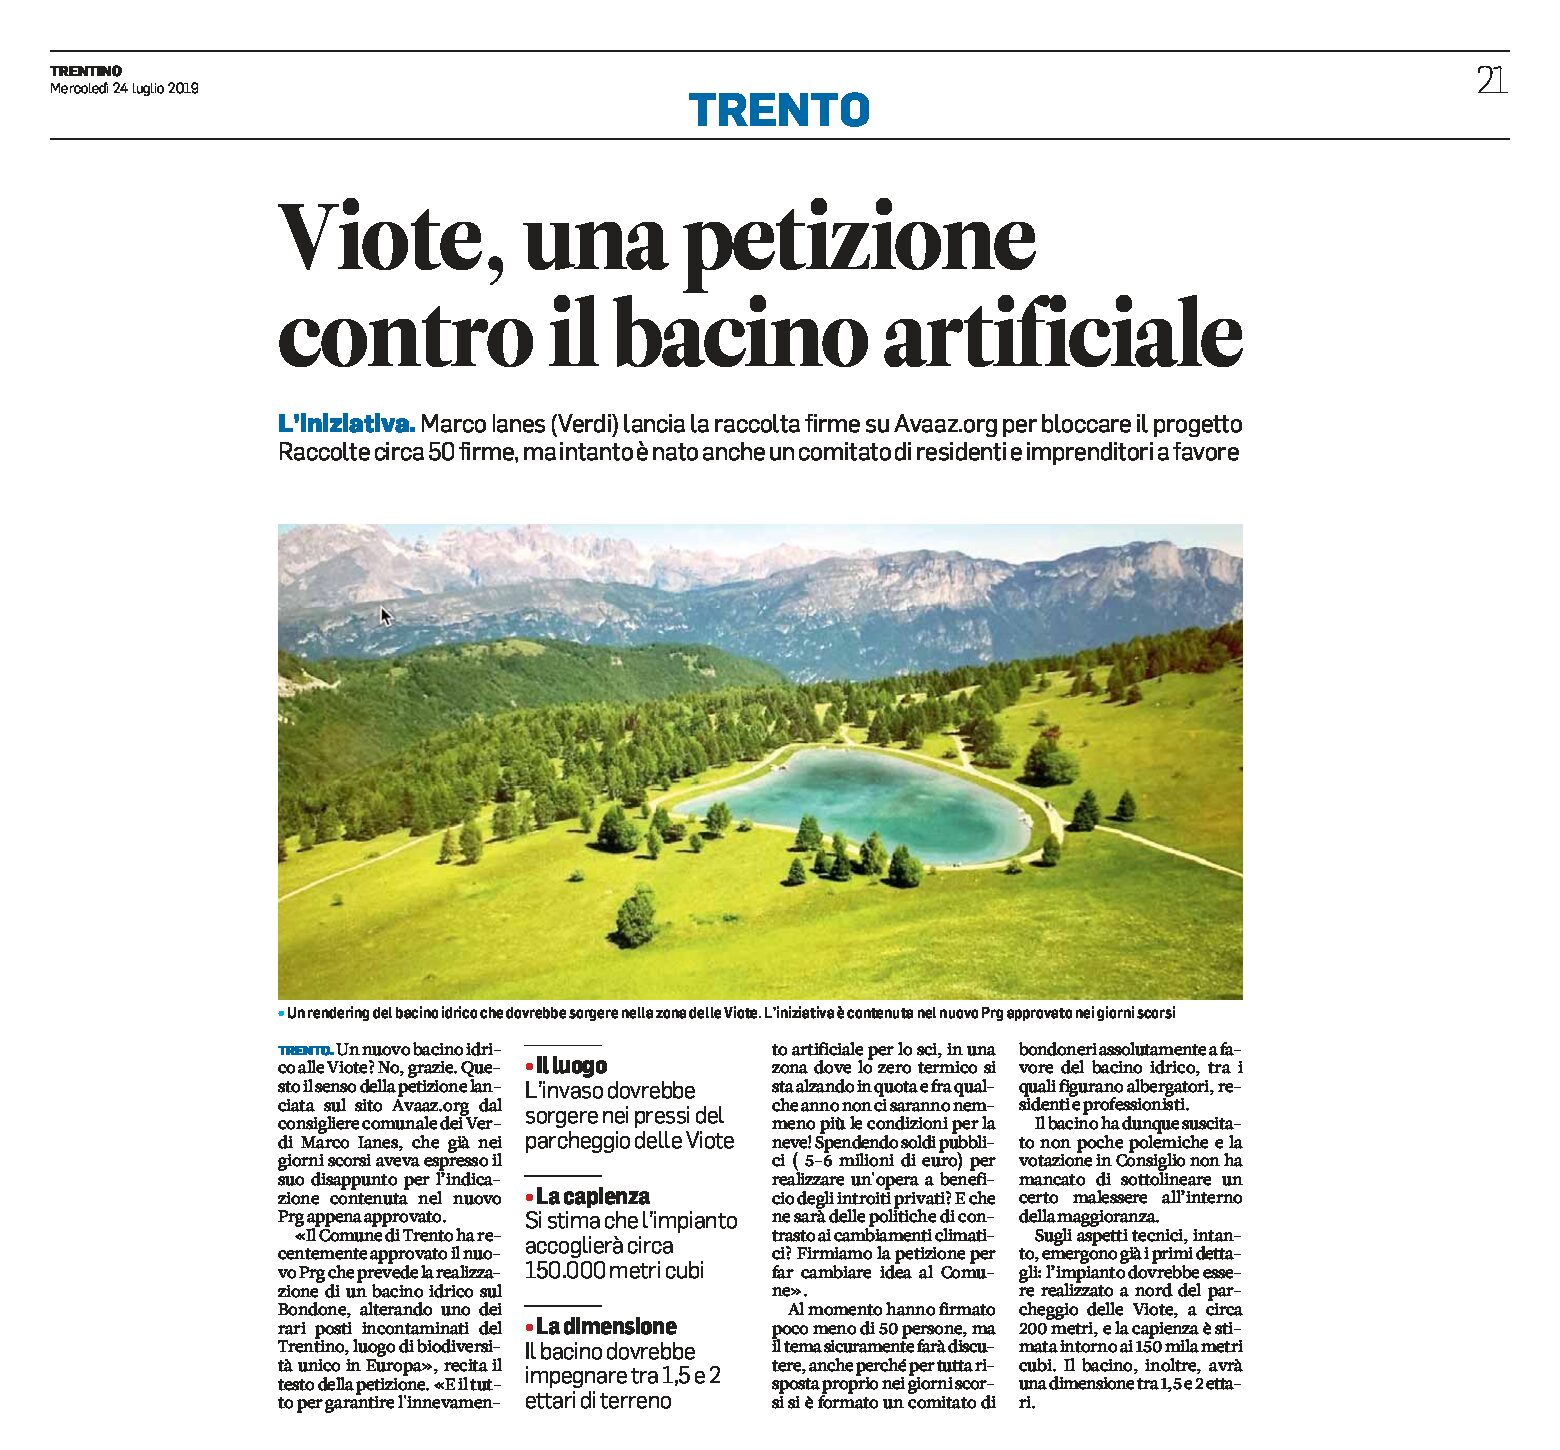 Trento, Prg: Bondone, una petizione contro il bacino artificiale alle Viote e un comitato a favore